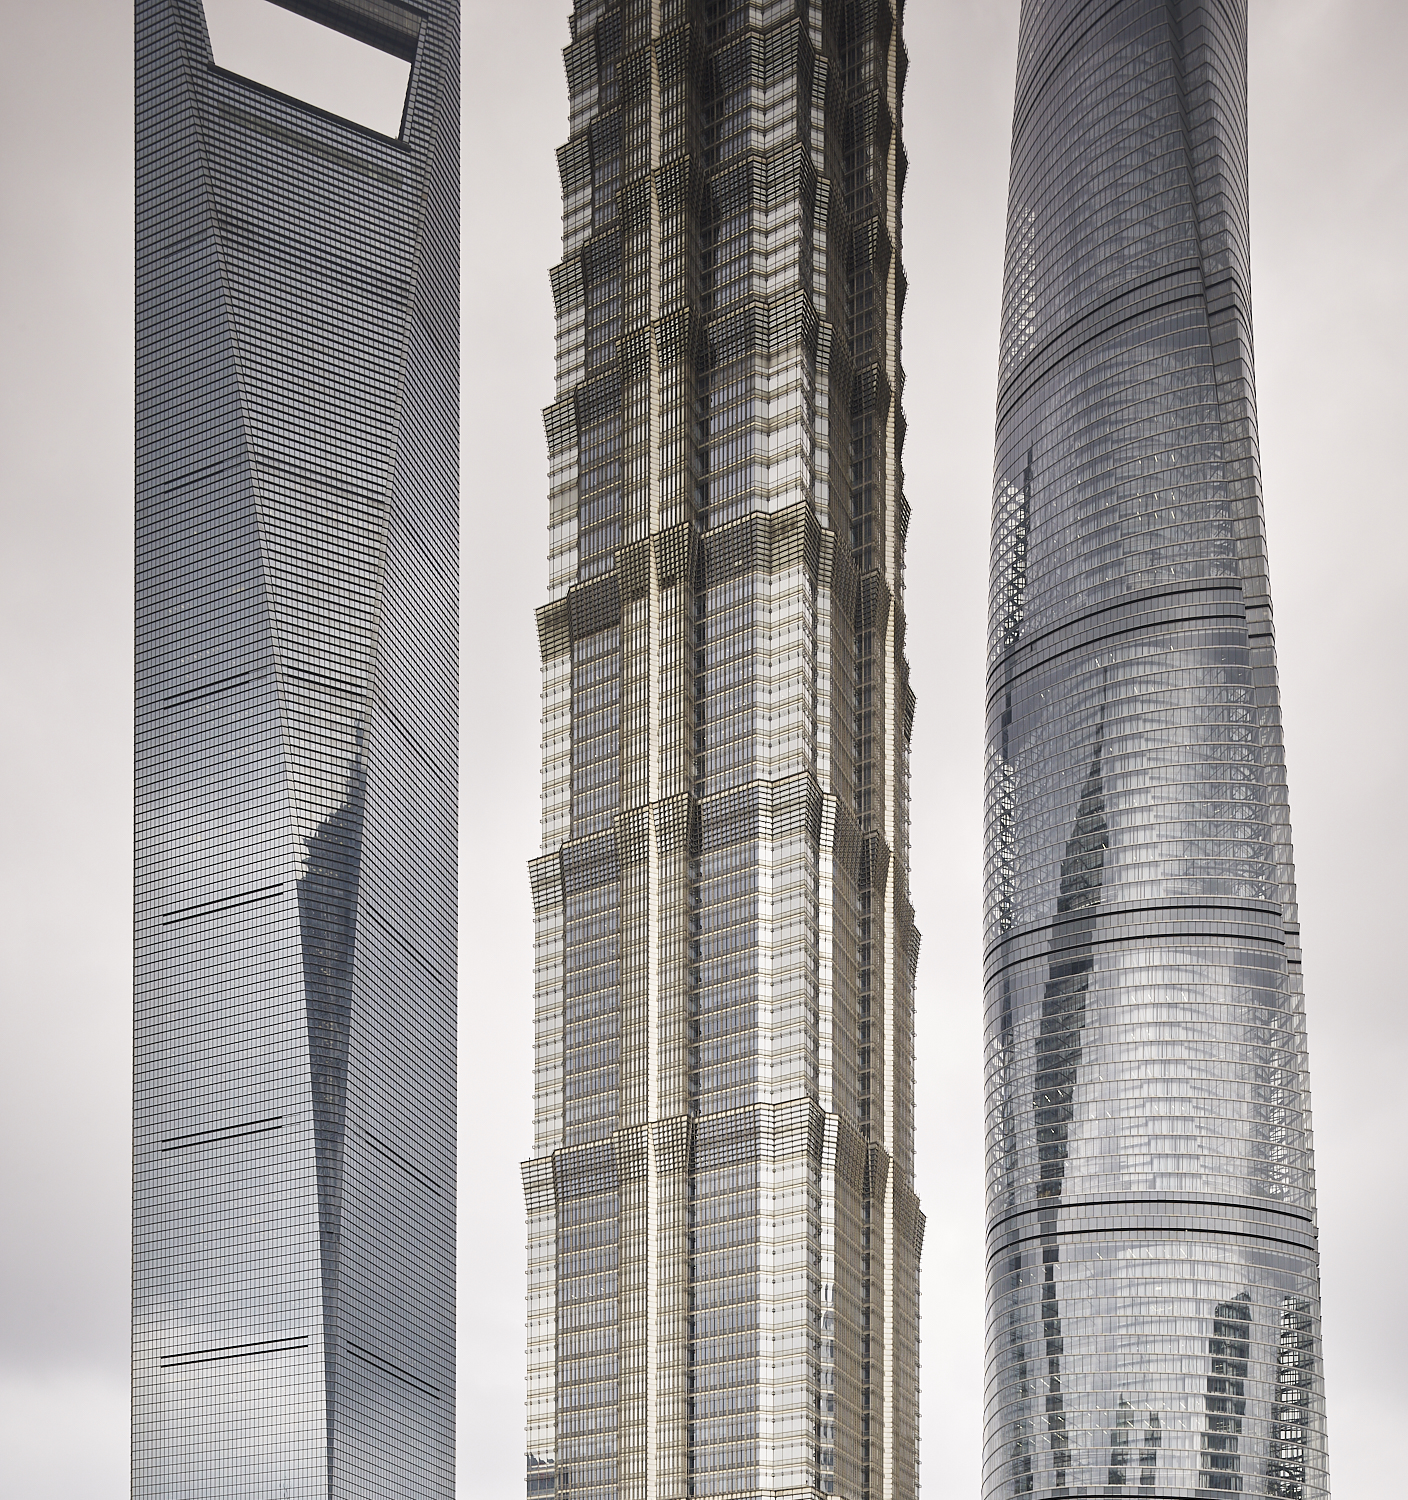  Pudong buildings, Shanghai, China, 2017 